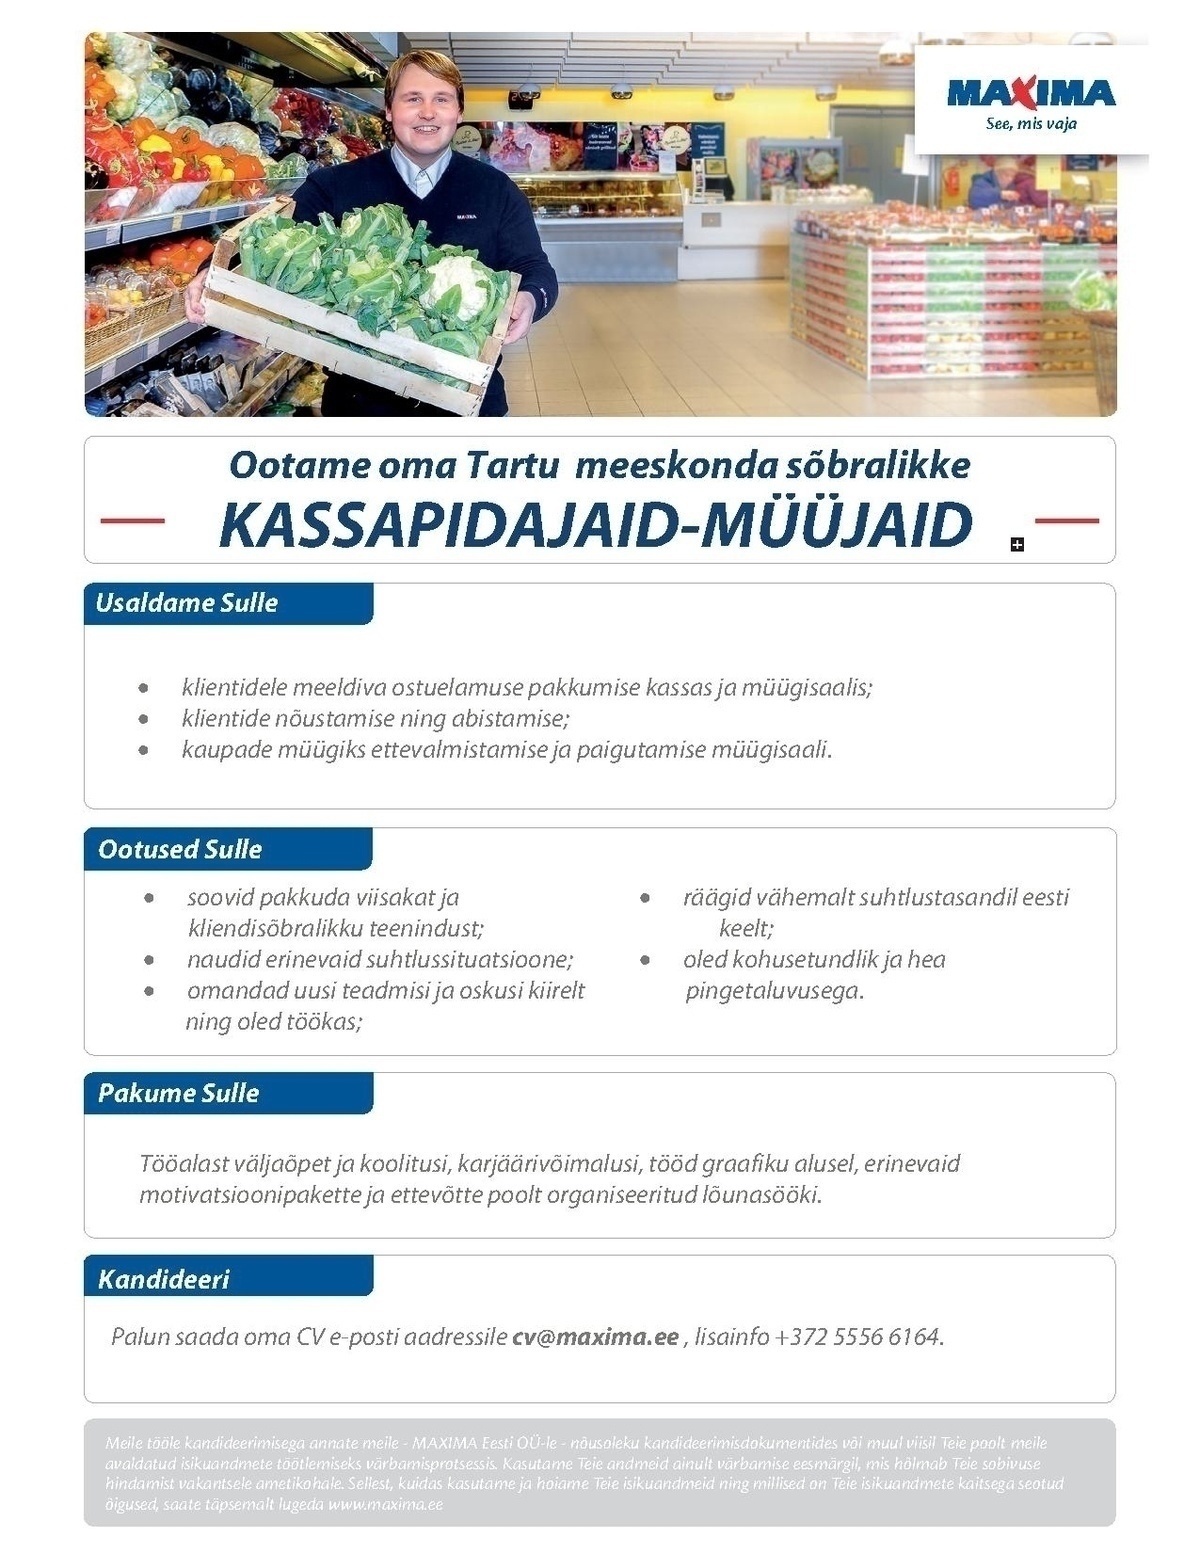 Maxima Eesti OÜ Kassapidaja-müüja Tartu Maximas (Ilmatsalu 11)